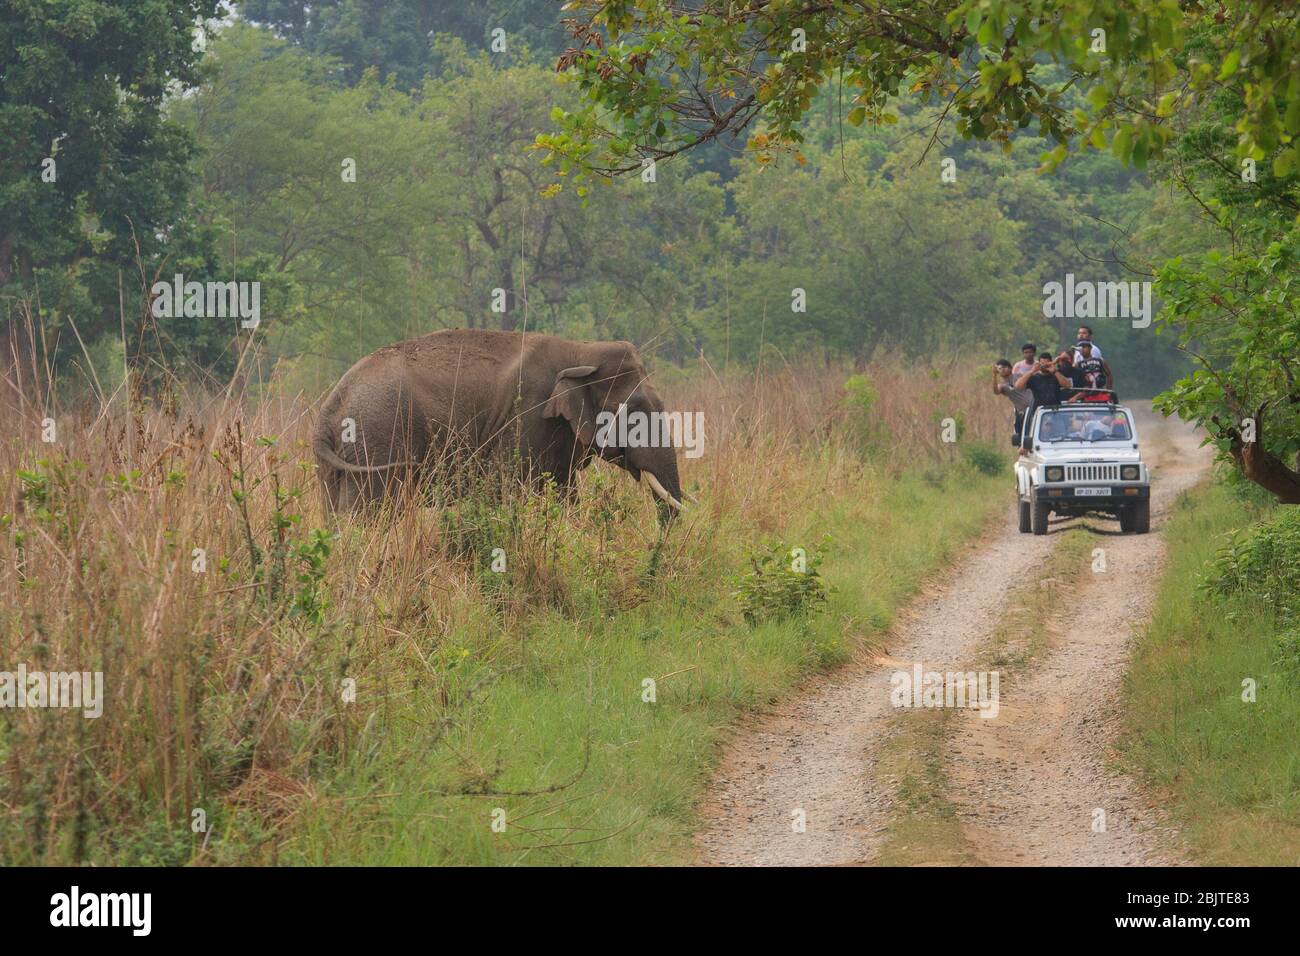 Eine Gruppe von Touristen, die einen wilden Elefanten aus dem Safari-Fahrzeug beobachten - fotografiert im Corbett National Park (Indien) Stockfoto